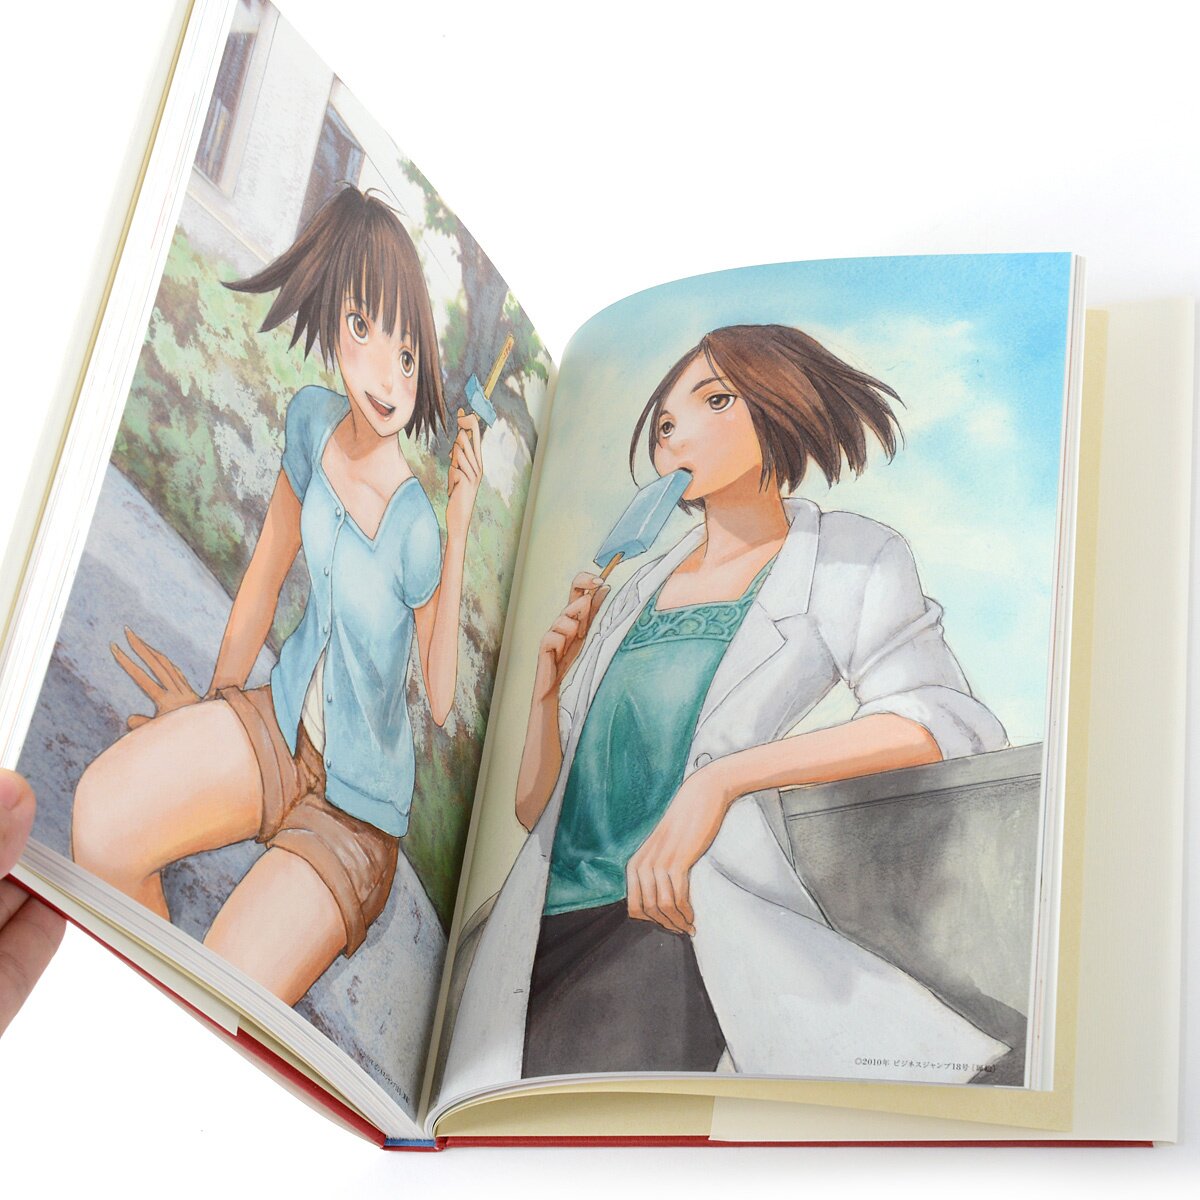 Sing Yesterday afterword comic manga anime Kei Toume wo utatte Japanese Book